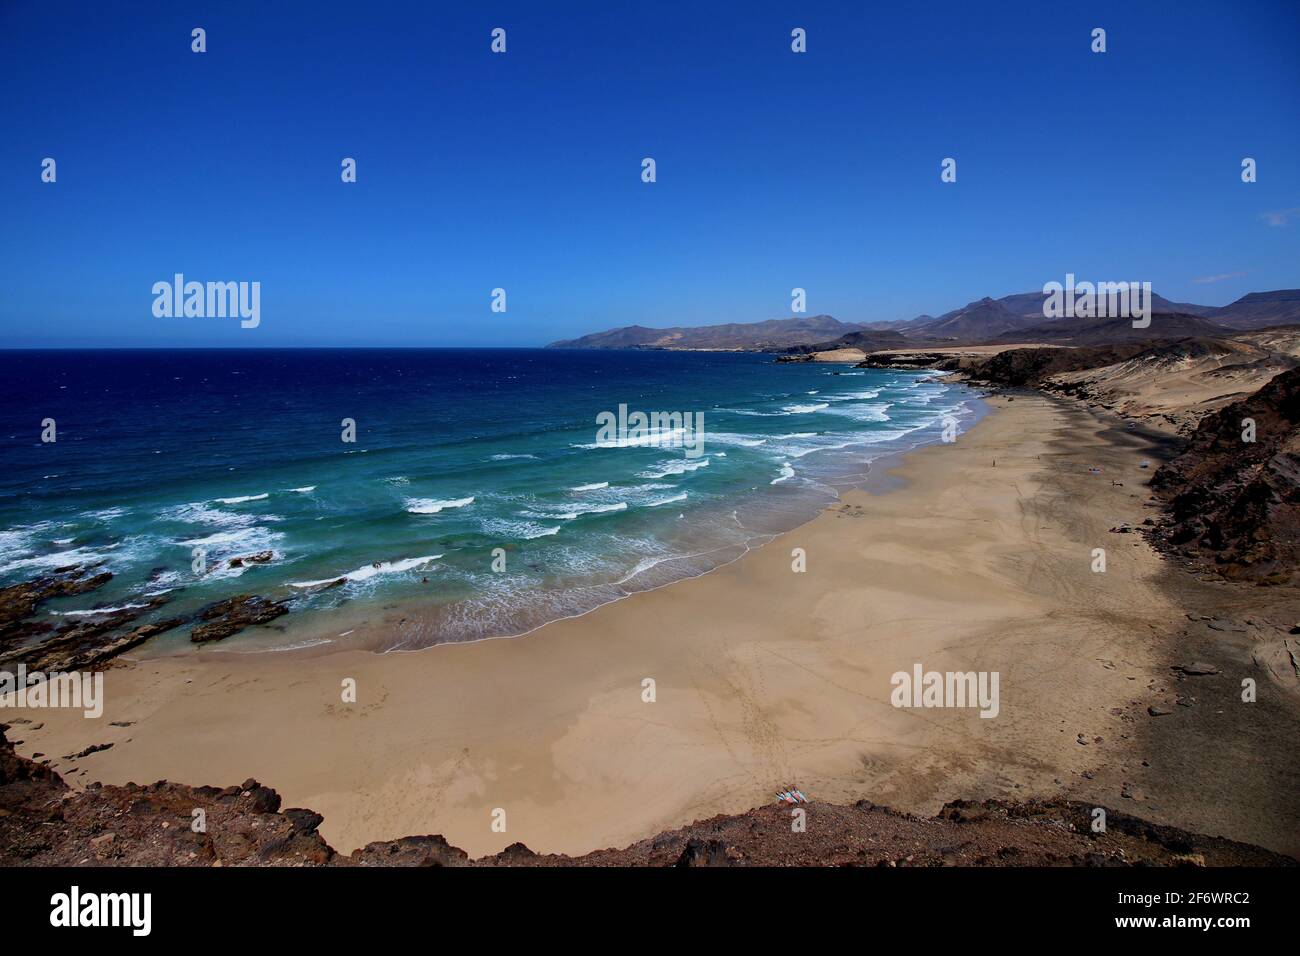 Una de las playas de La Pared - Fuerteventura Foto de stock